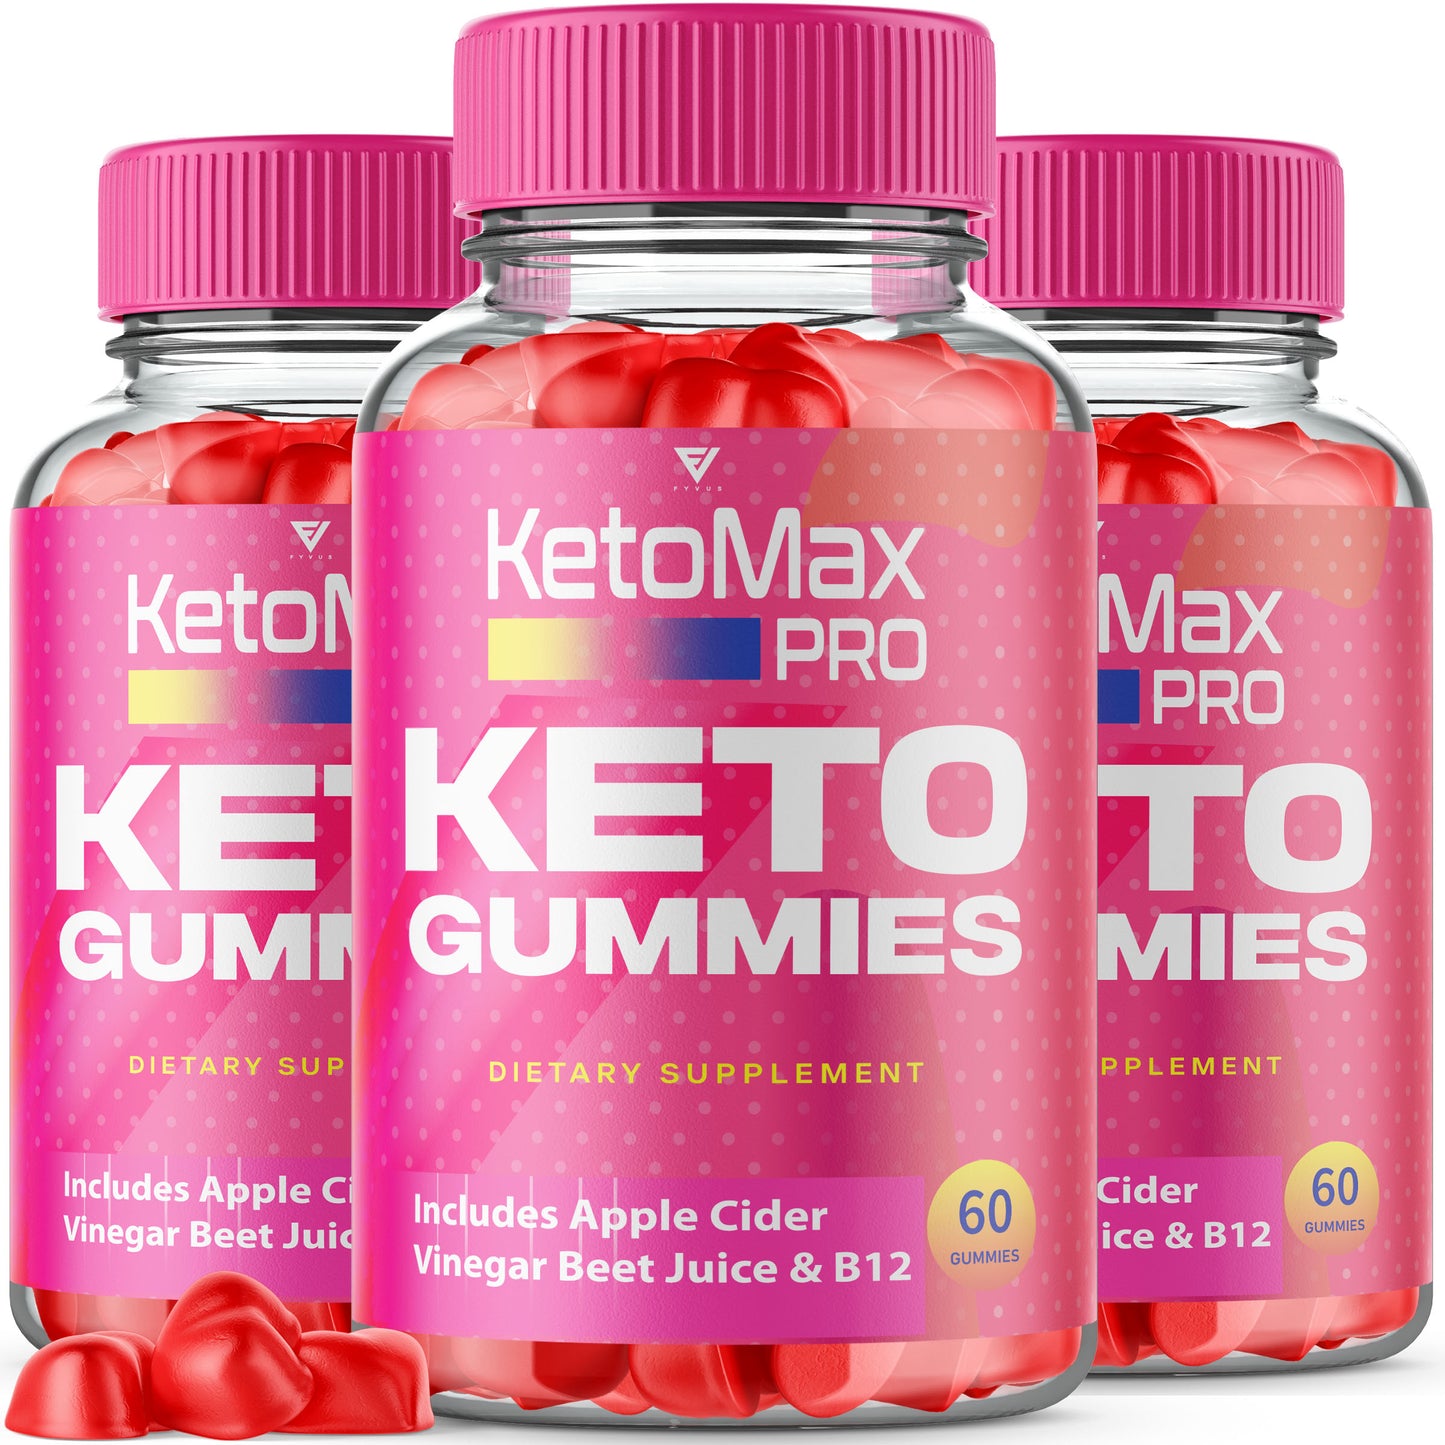 KetoMax Pro Keto Gummies